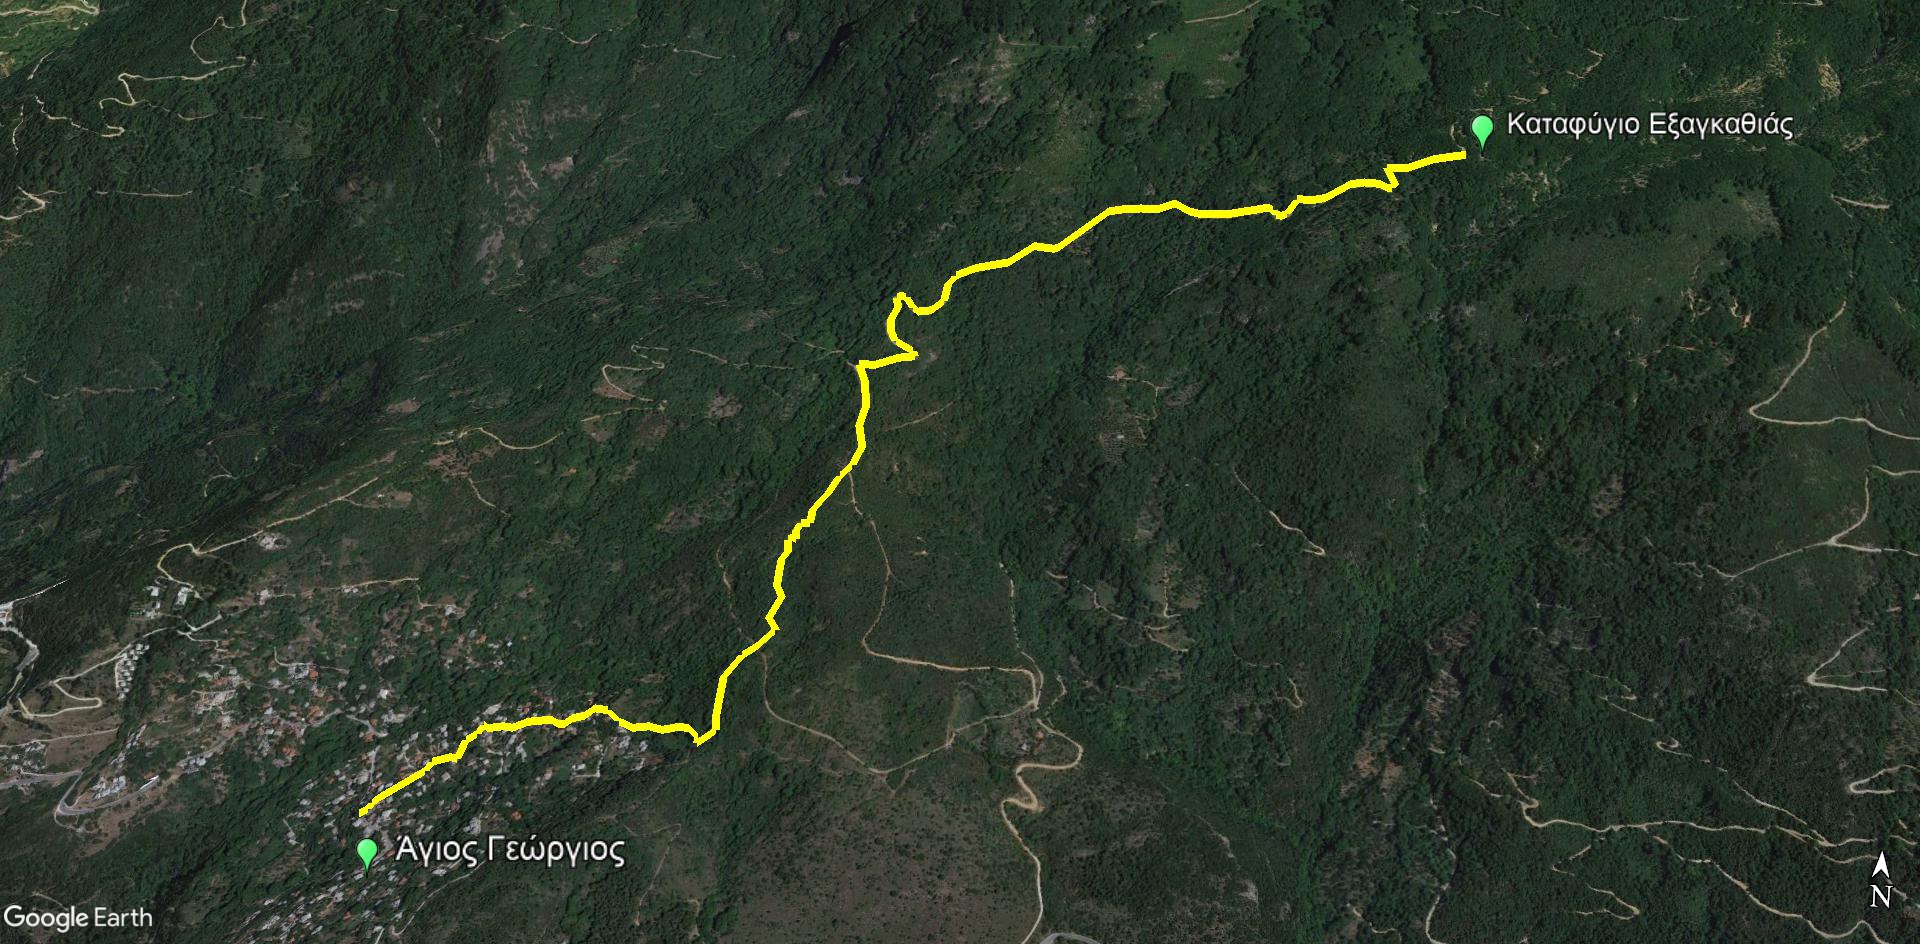 Δυτικό Πήλιο topoguide: Διαδρομή Άγιος Γεώργιος - καταφύγιο ανάγκης Εξαγκαθιάς